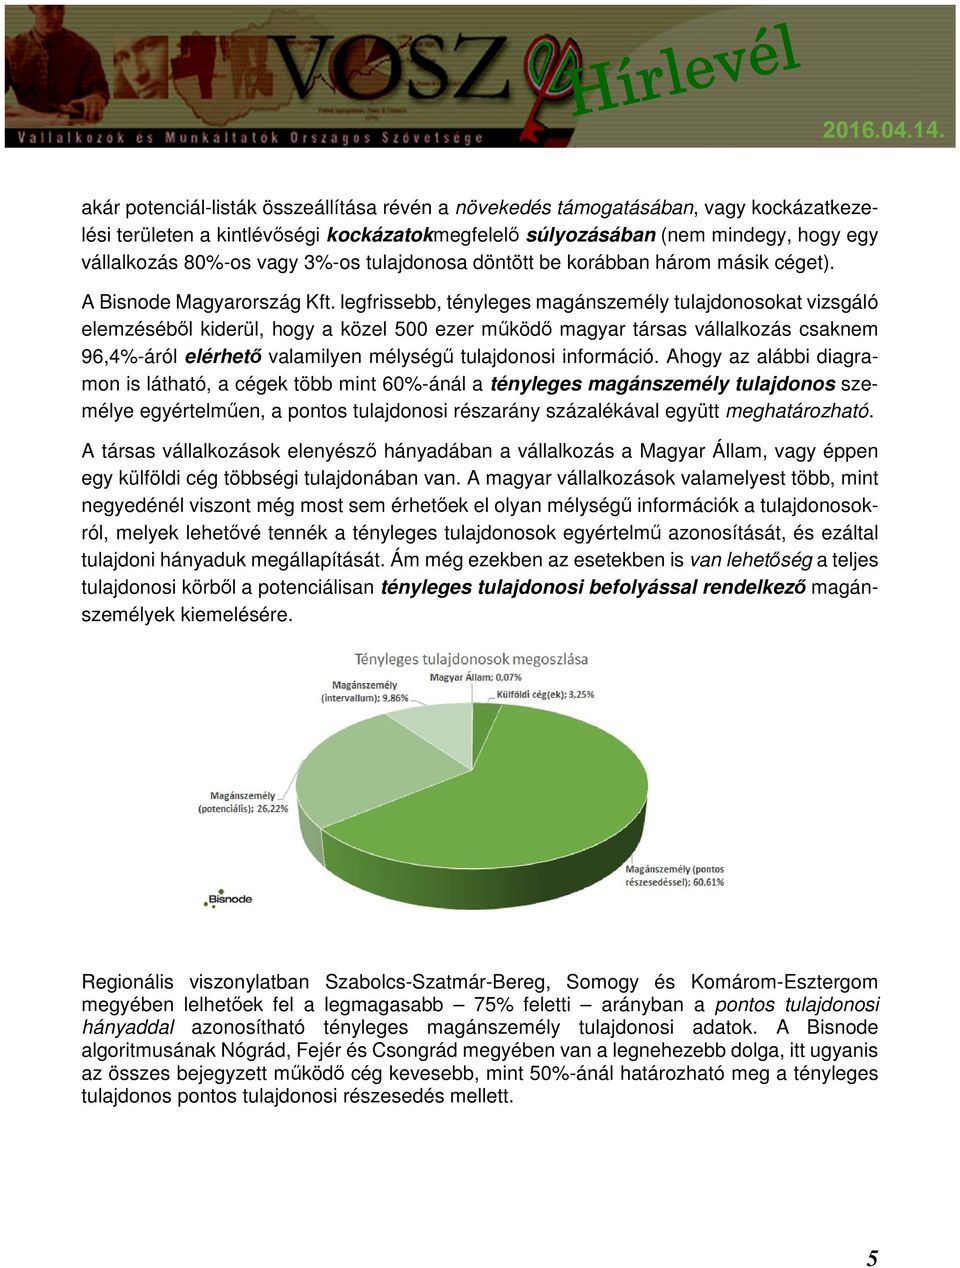 legfrissebb, tényleges magánszemély tulajdonosokat vizsgáló elemzéséből kiderül, hogy a közel 500 ezer működő magyar társas vállalkozás csaknem 96,4%-áról elérhető valamilyen mélységű tulajdonosi